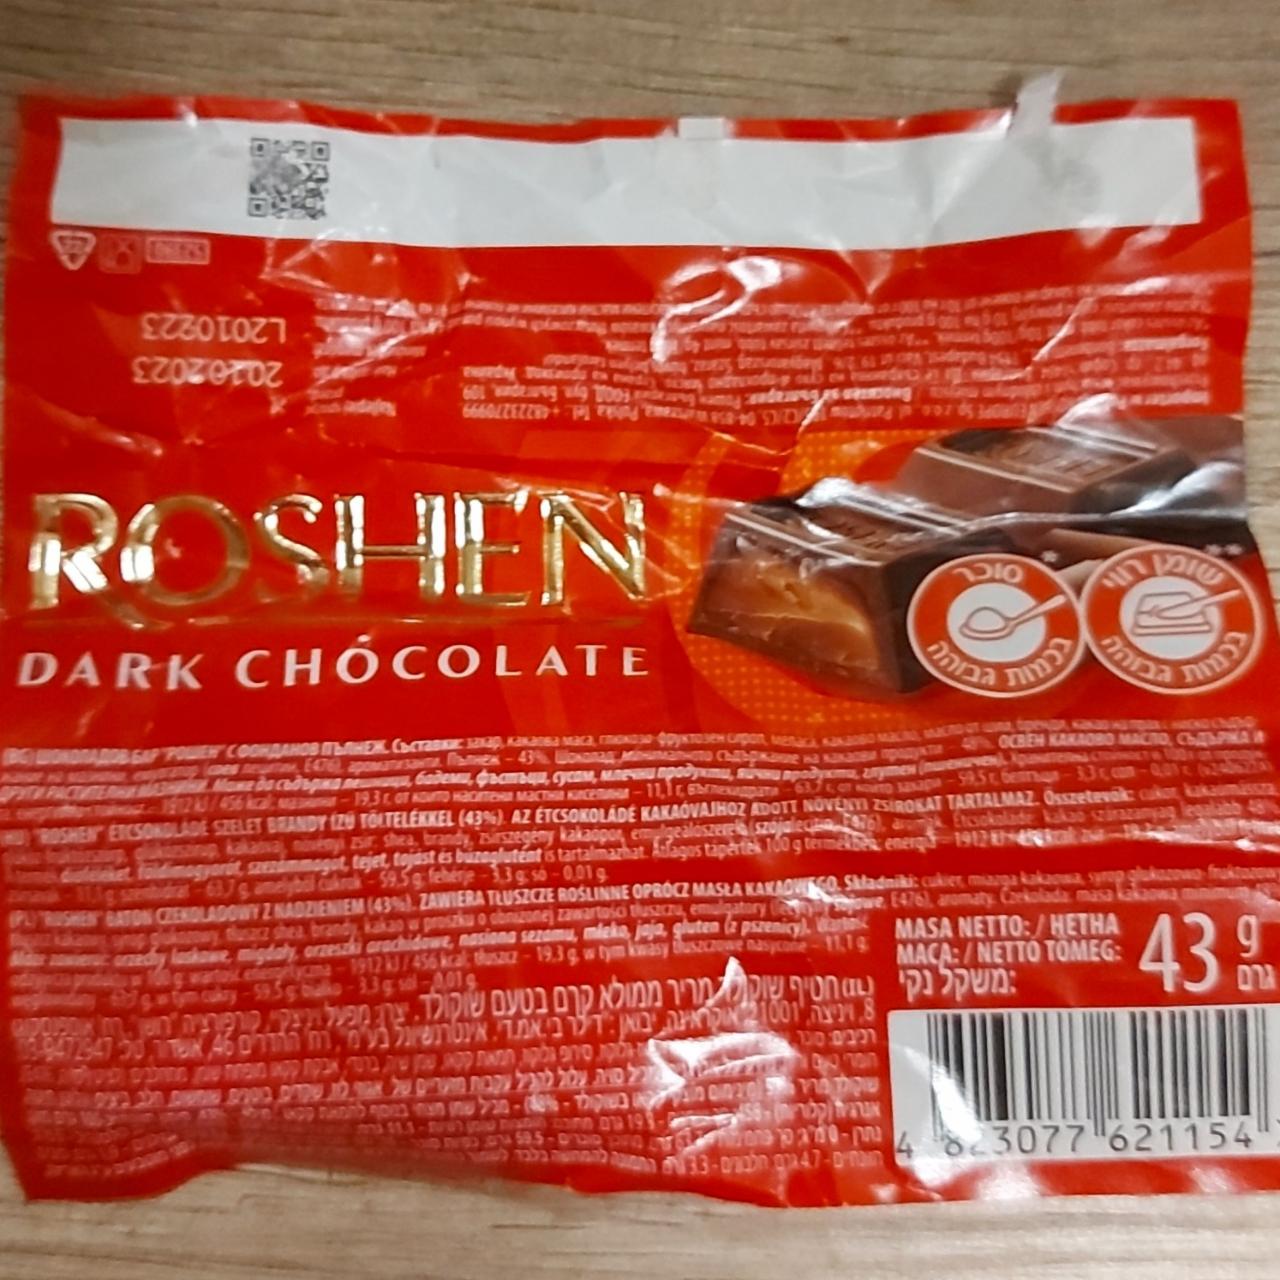 Képek - Dark chocolate Roshen